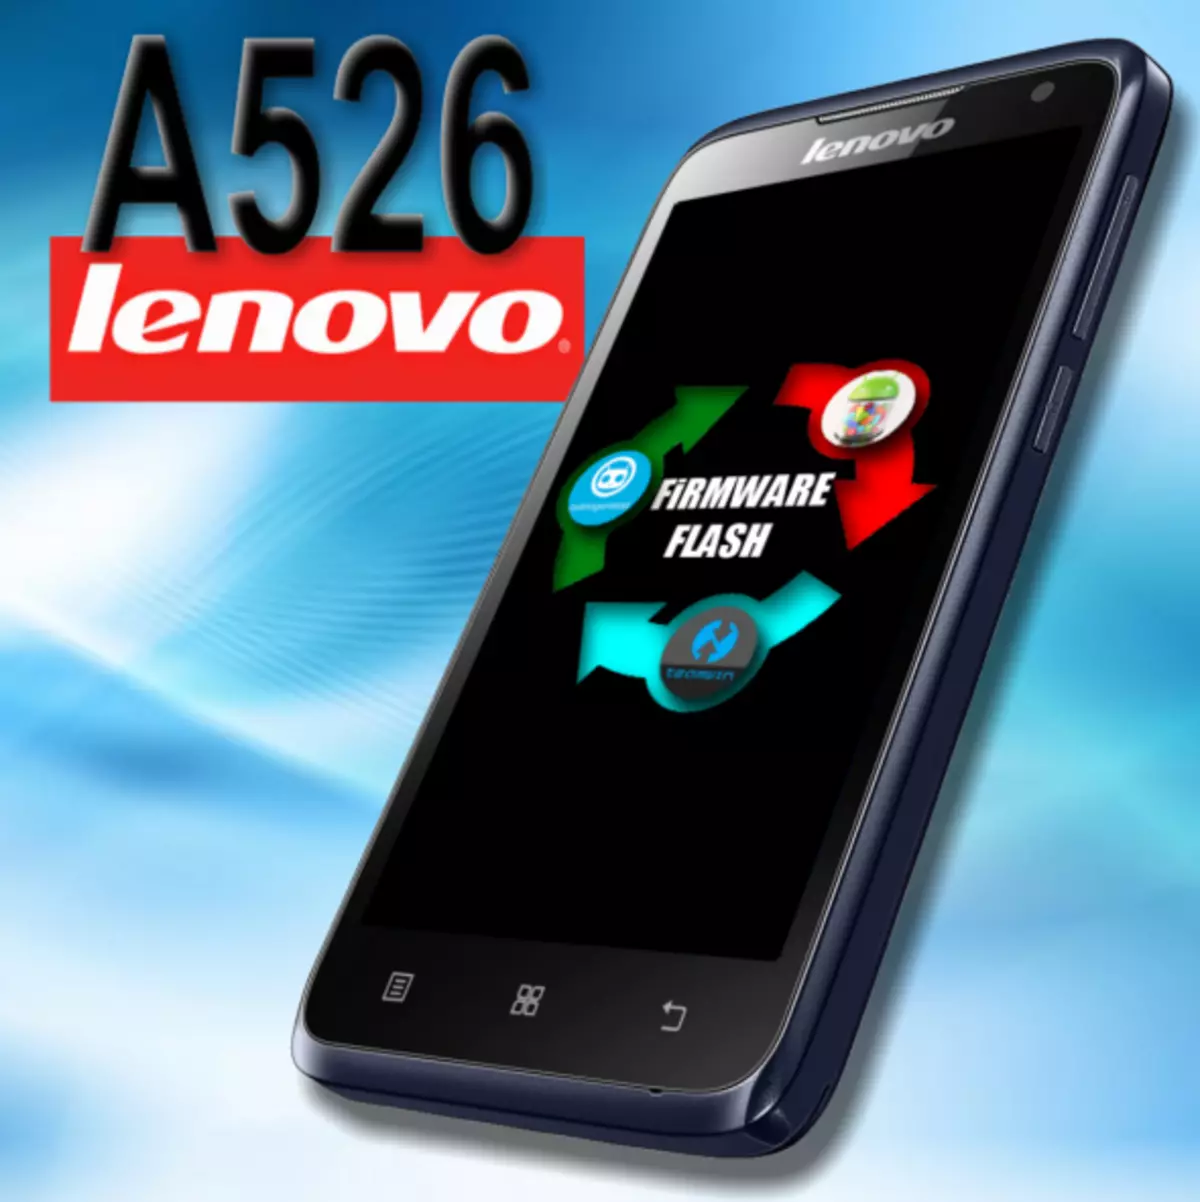 Firmware Lenovo A526 ။